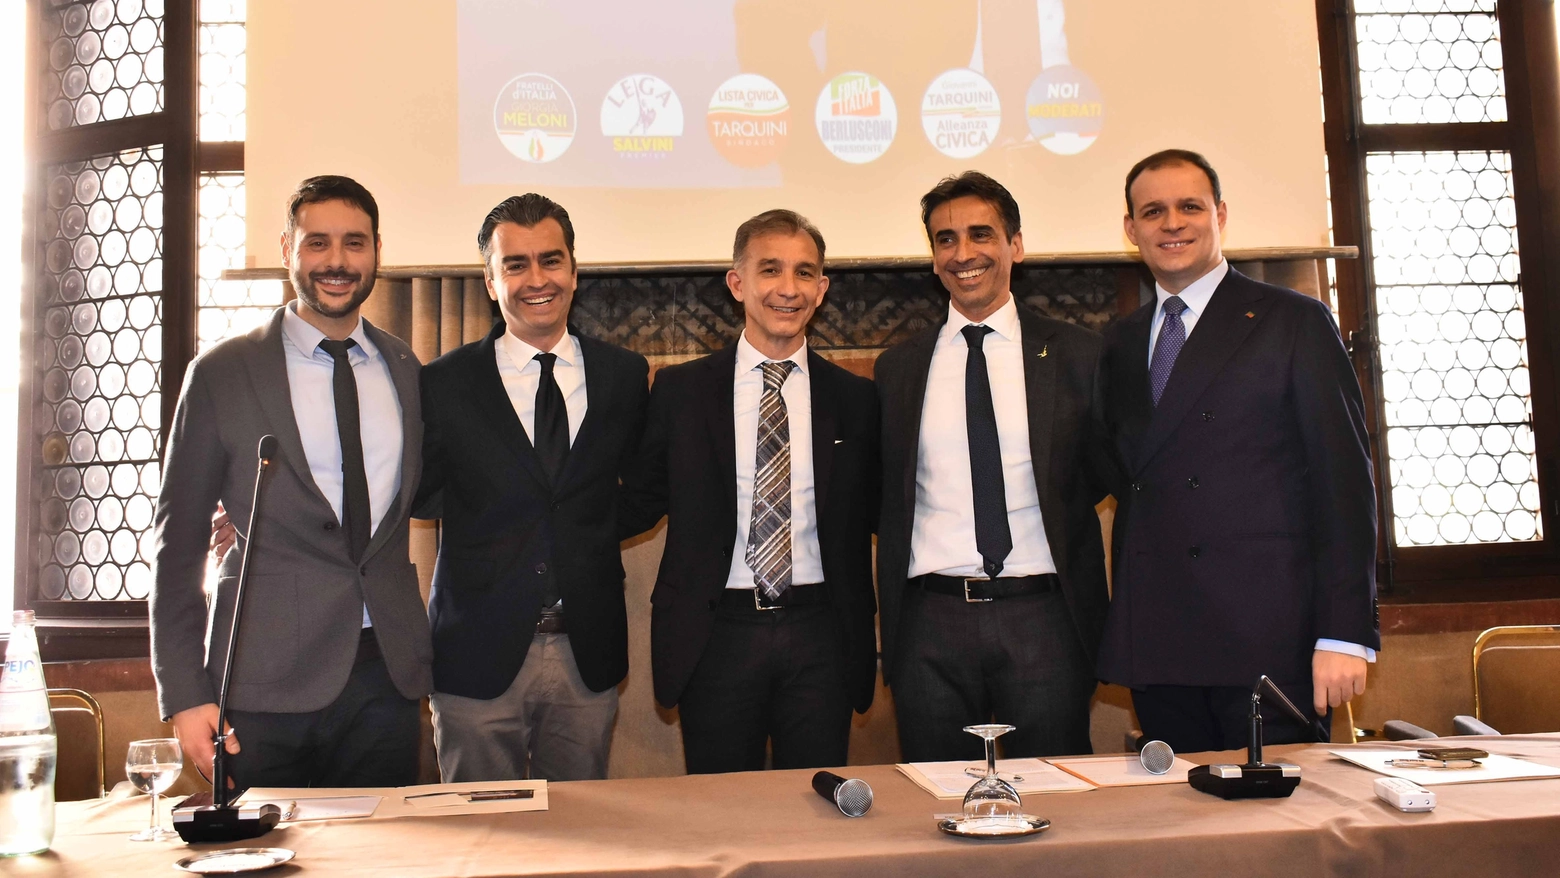 Da sinistra, Filippo Ferrarini (Alleanza Civica), Alessandro Aragona (Fd'I), Giovanni Tarquini, Roberto Salati (Lega) e Gianluca Nicolini (Fi)